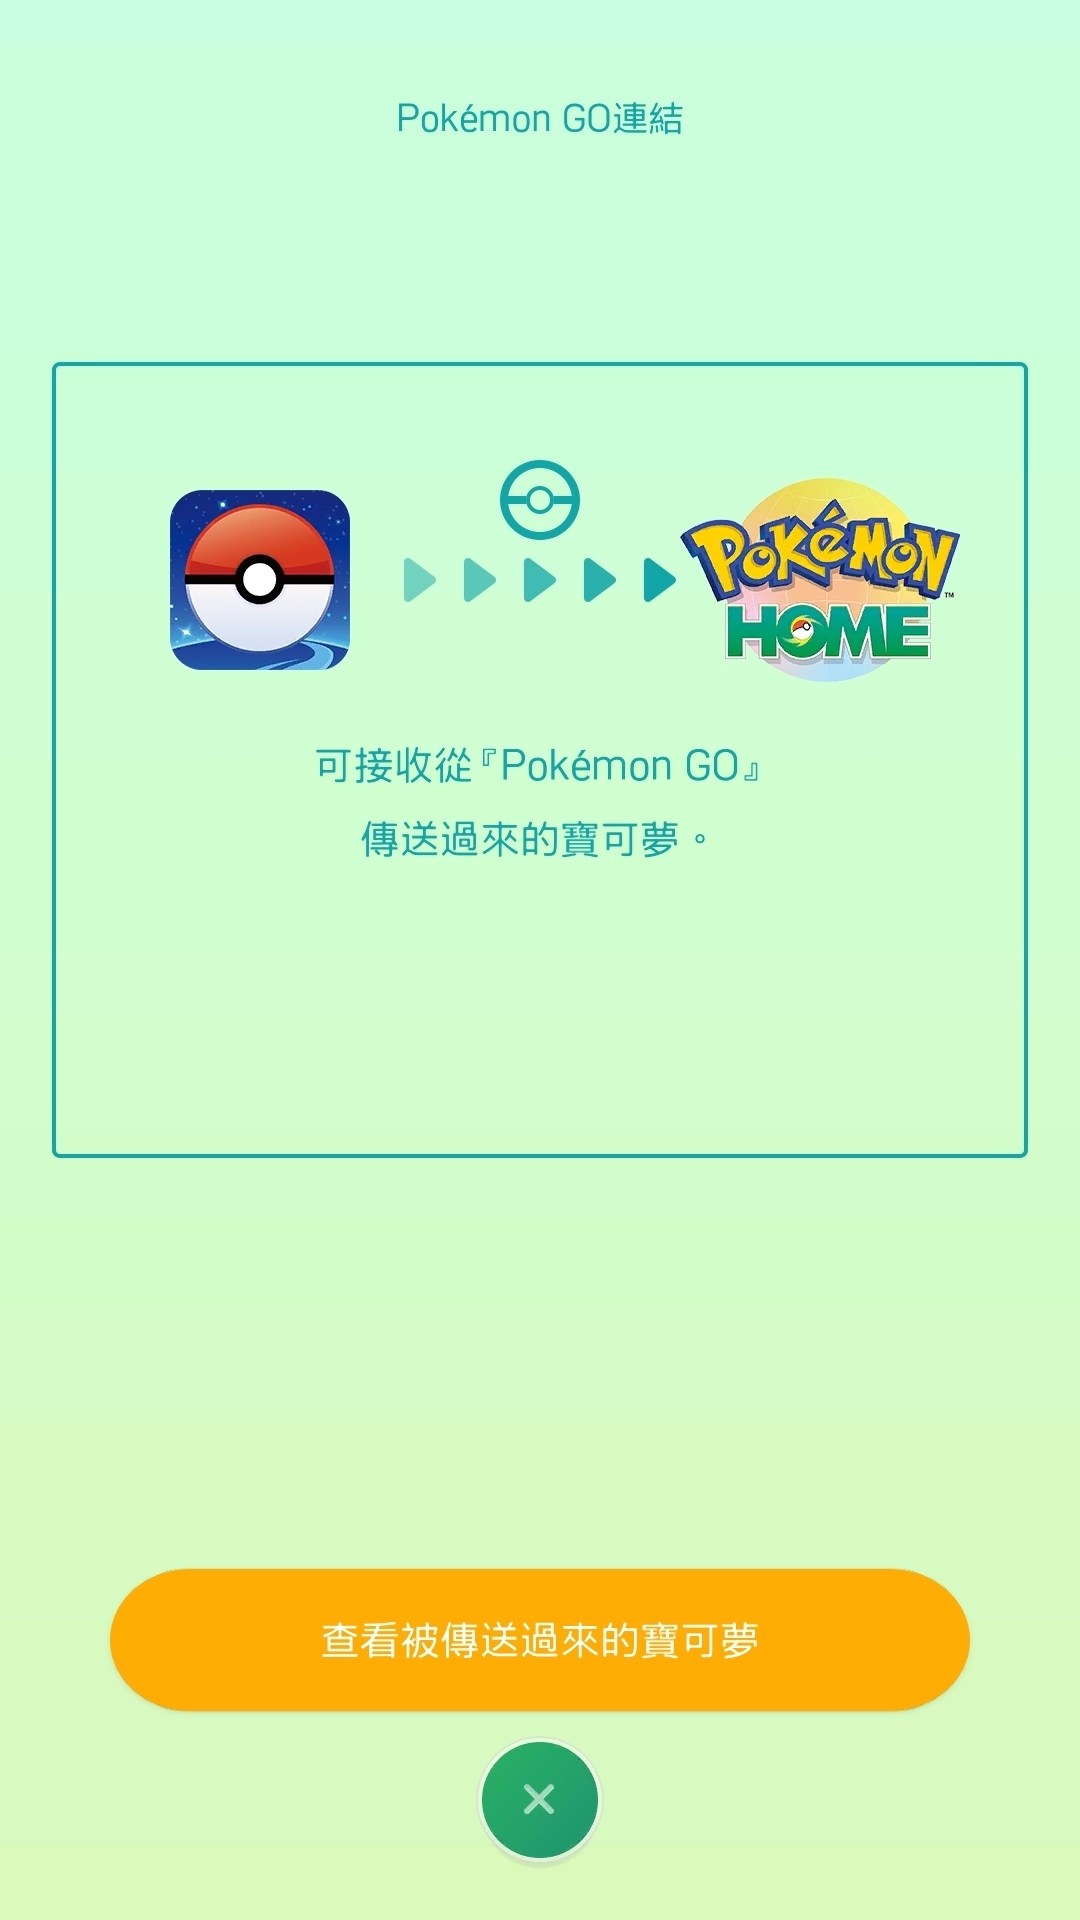 Pokemongo口袋妖怪go 情报 Pokemon Go To Home 已经开放 全体玩家皆已开放 Db游戏网